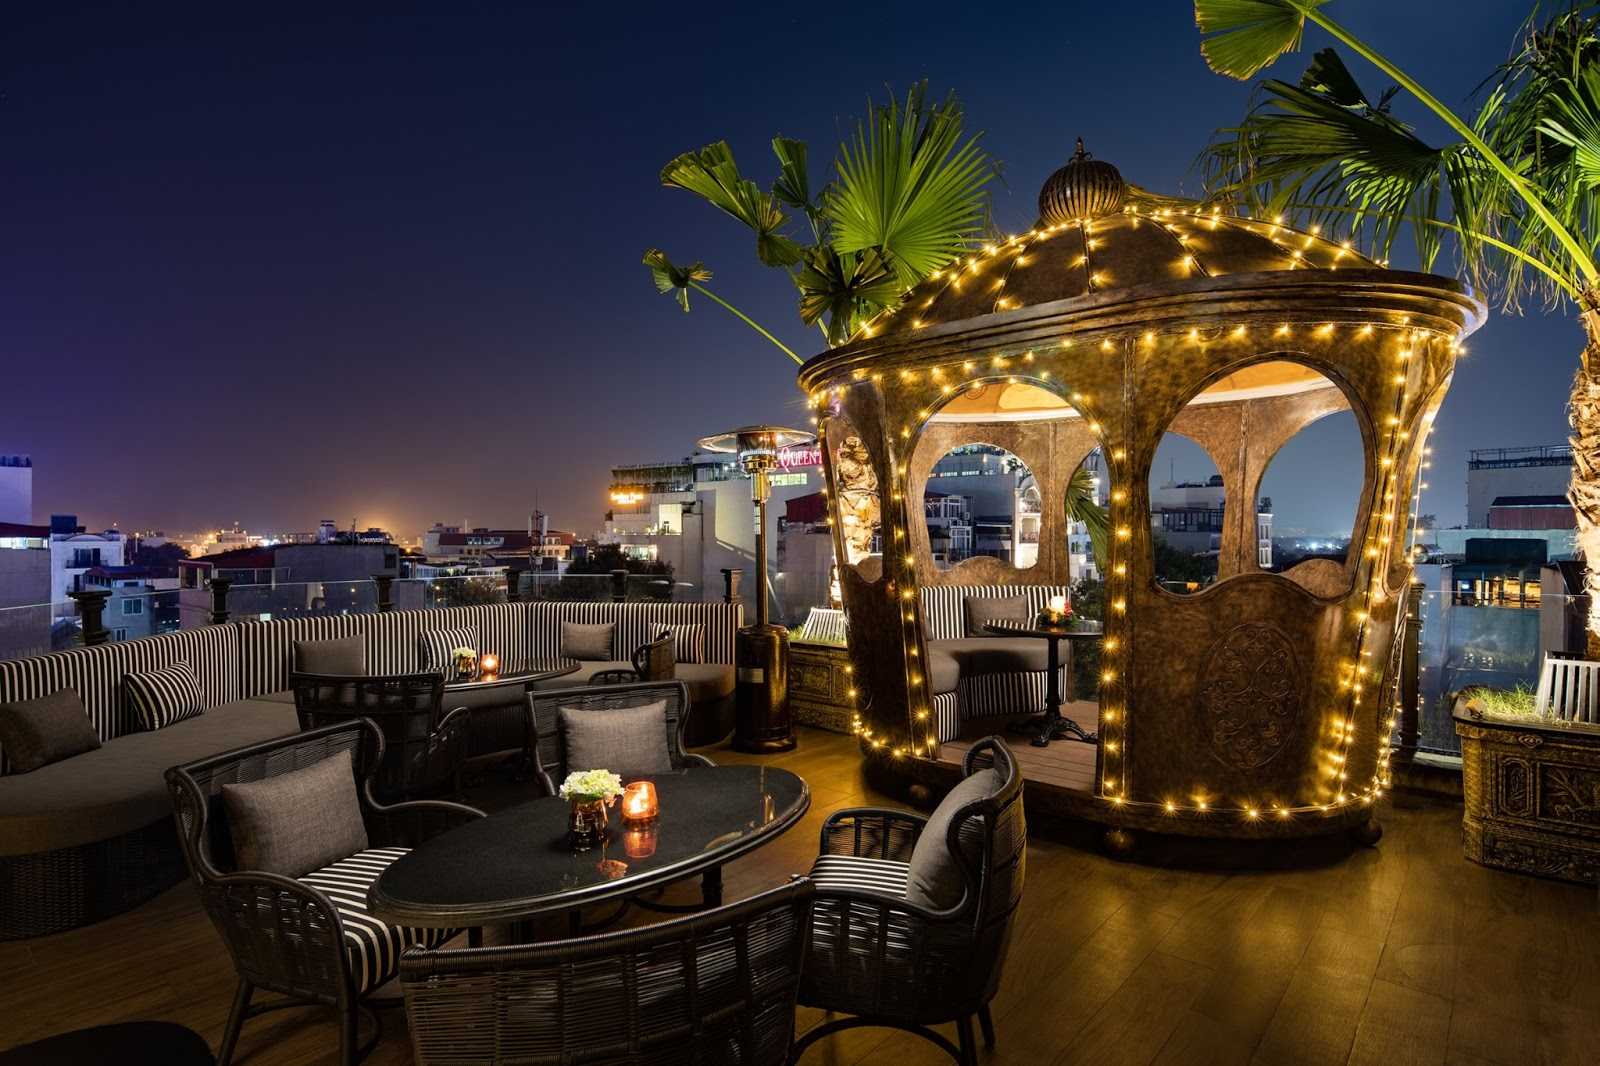 hanoi rooftop bars - terraco sky bar crown decor